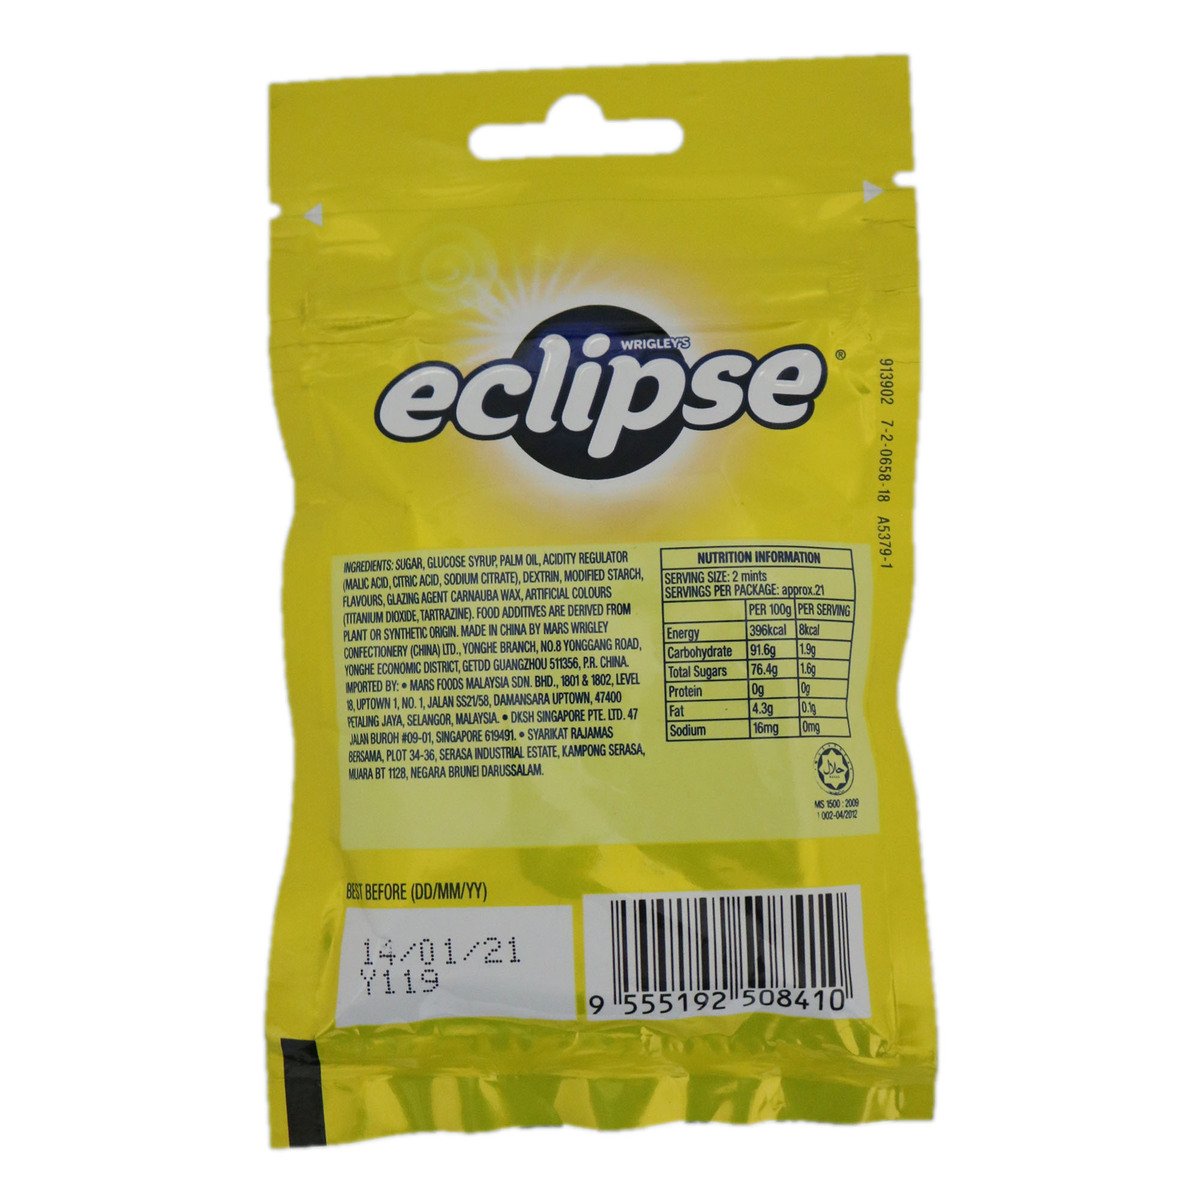 Eclipse Chewy Mint Lemon 45g